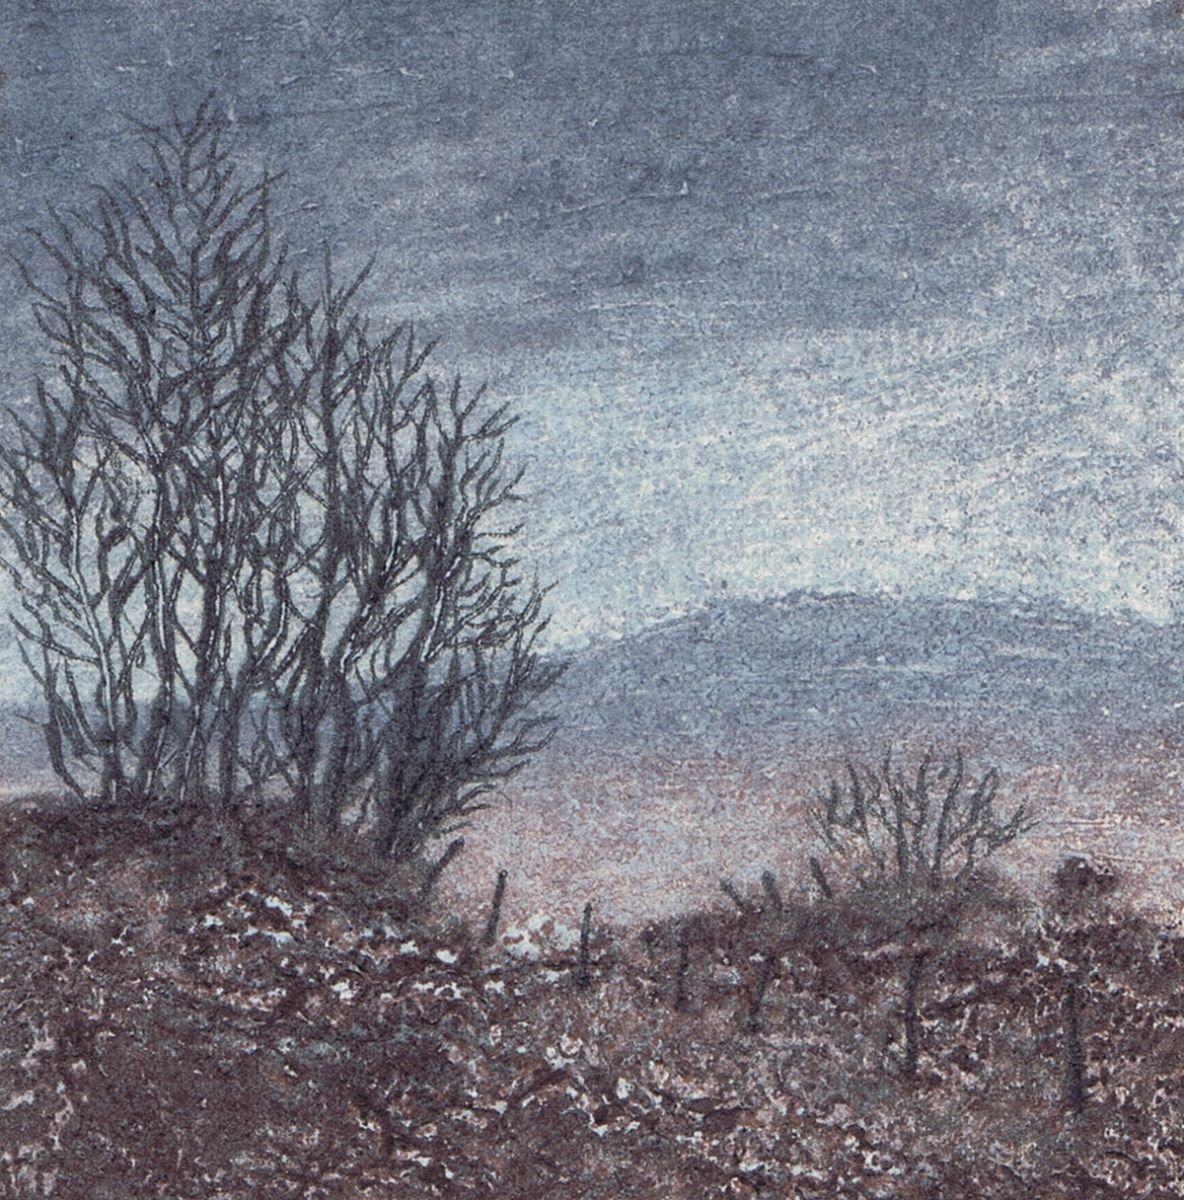 Bog Mist 2 by Aidan Flanagan Irish Landscapes